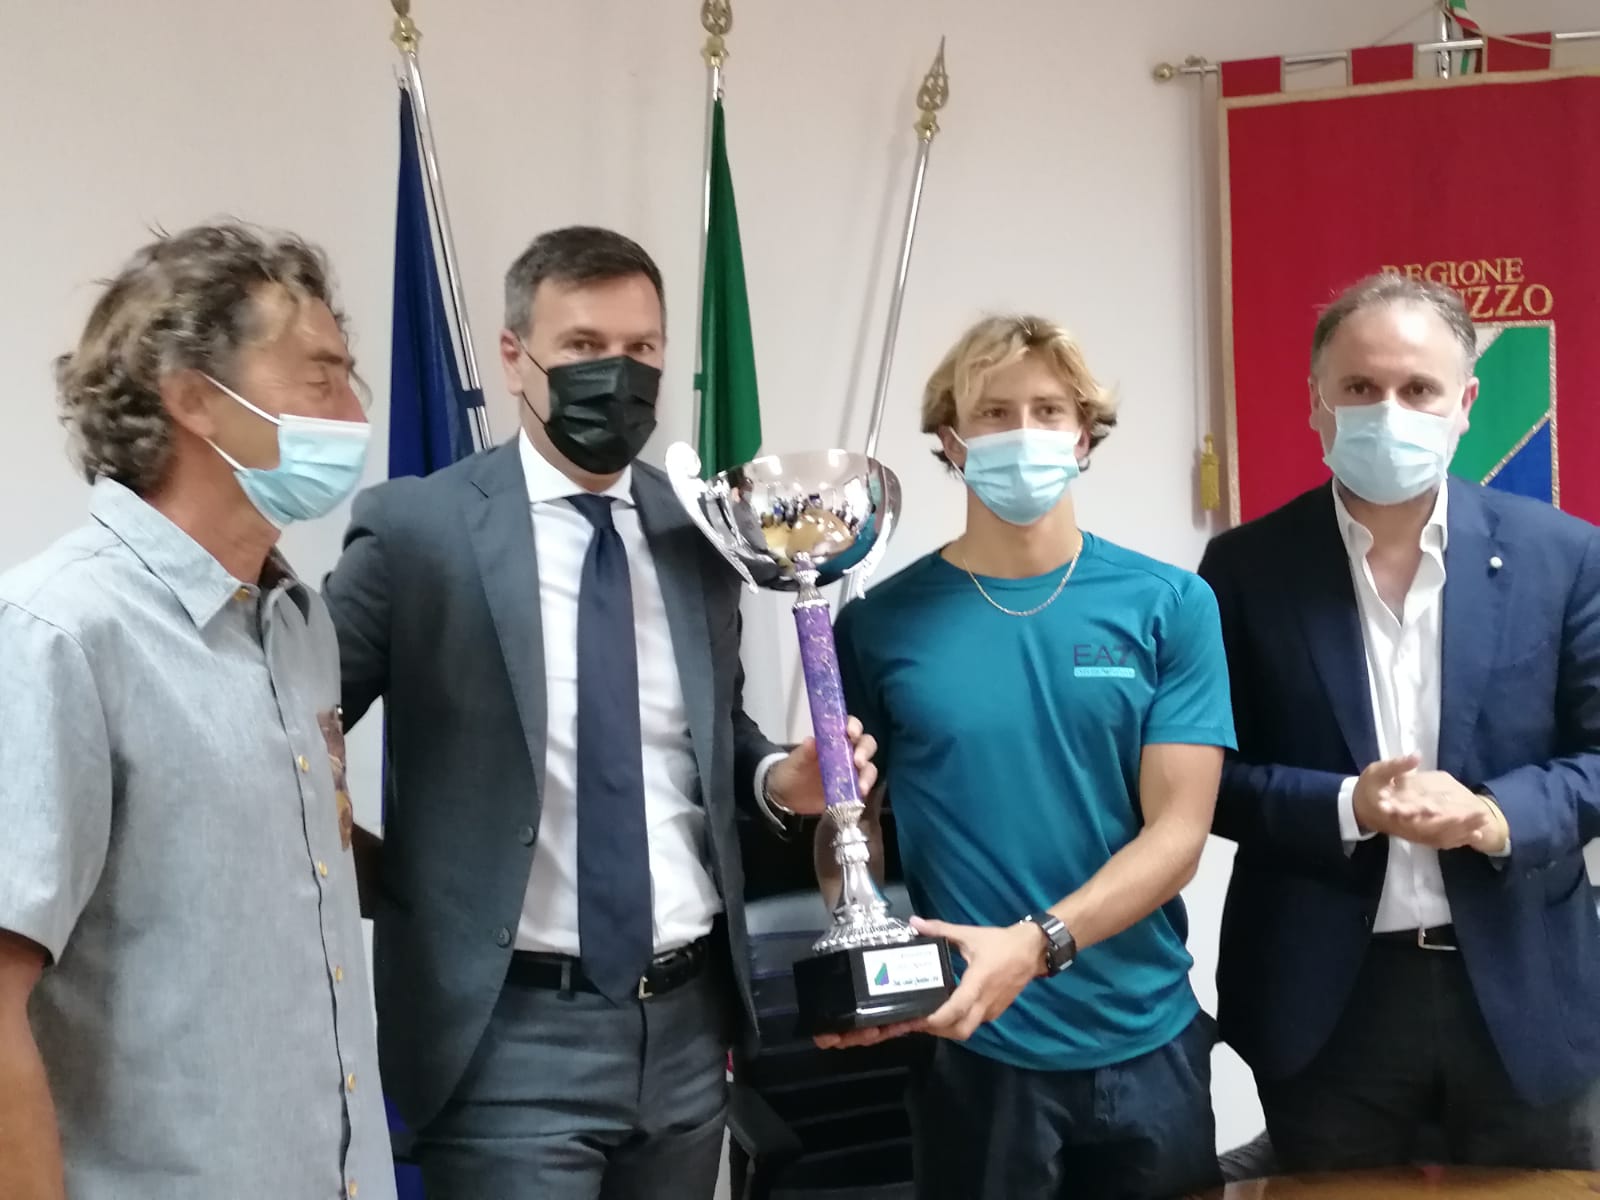 La regione Abruzzo premia il surfista Edoardo Papa ed il padre Andrea Papa